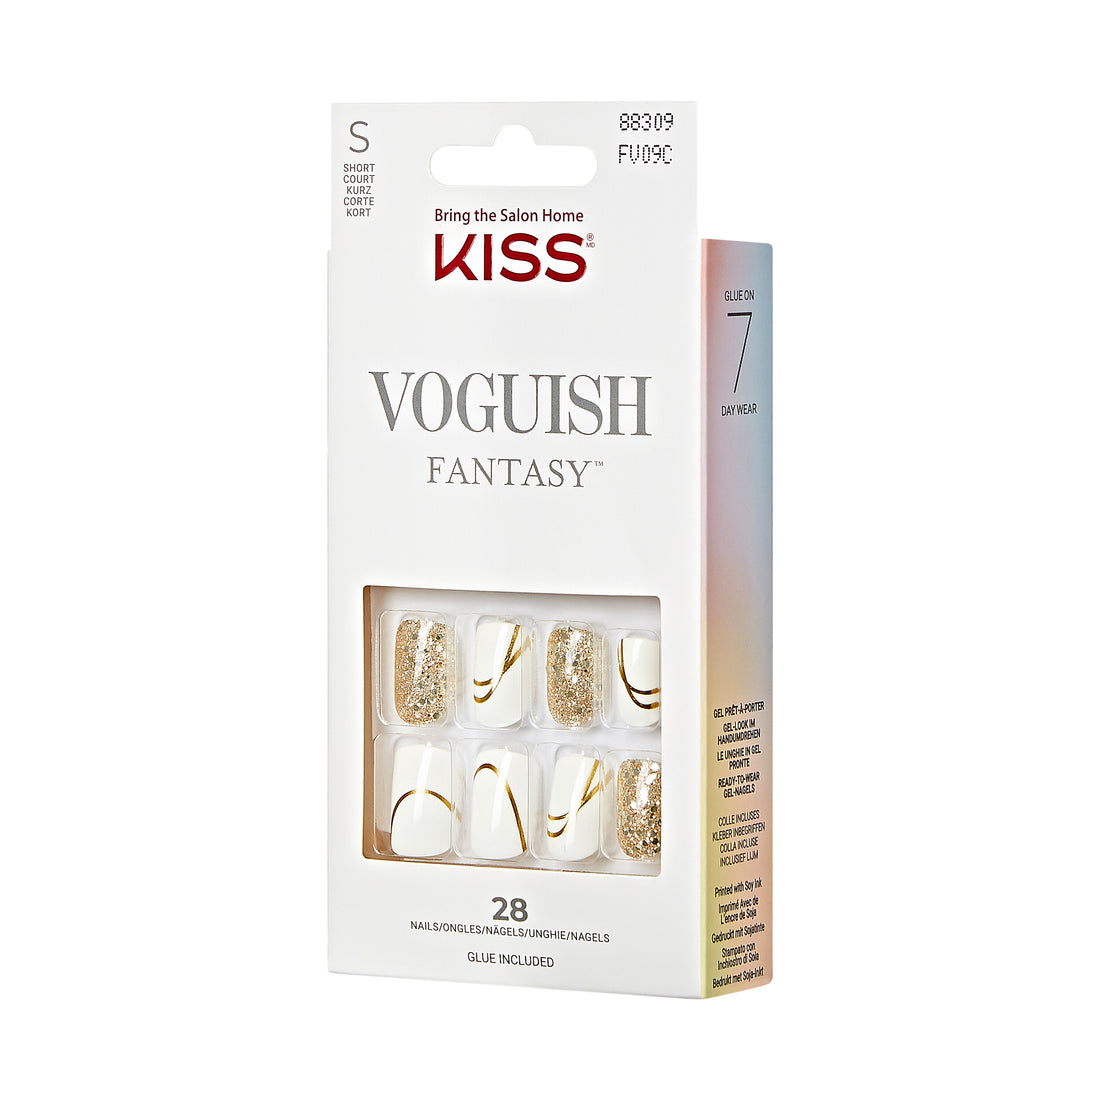 KISS Voguish Fantasy Nails - Glam and Glow